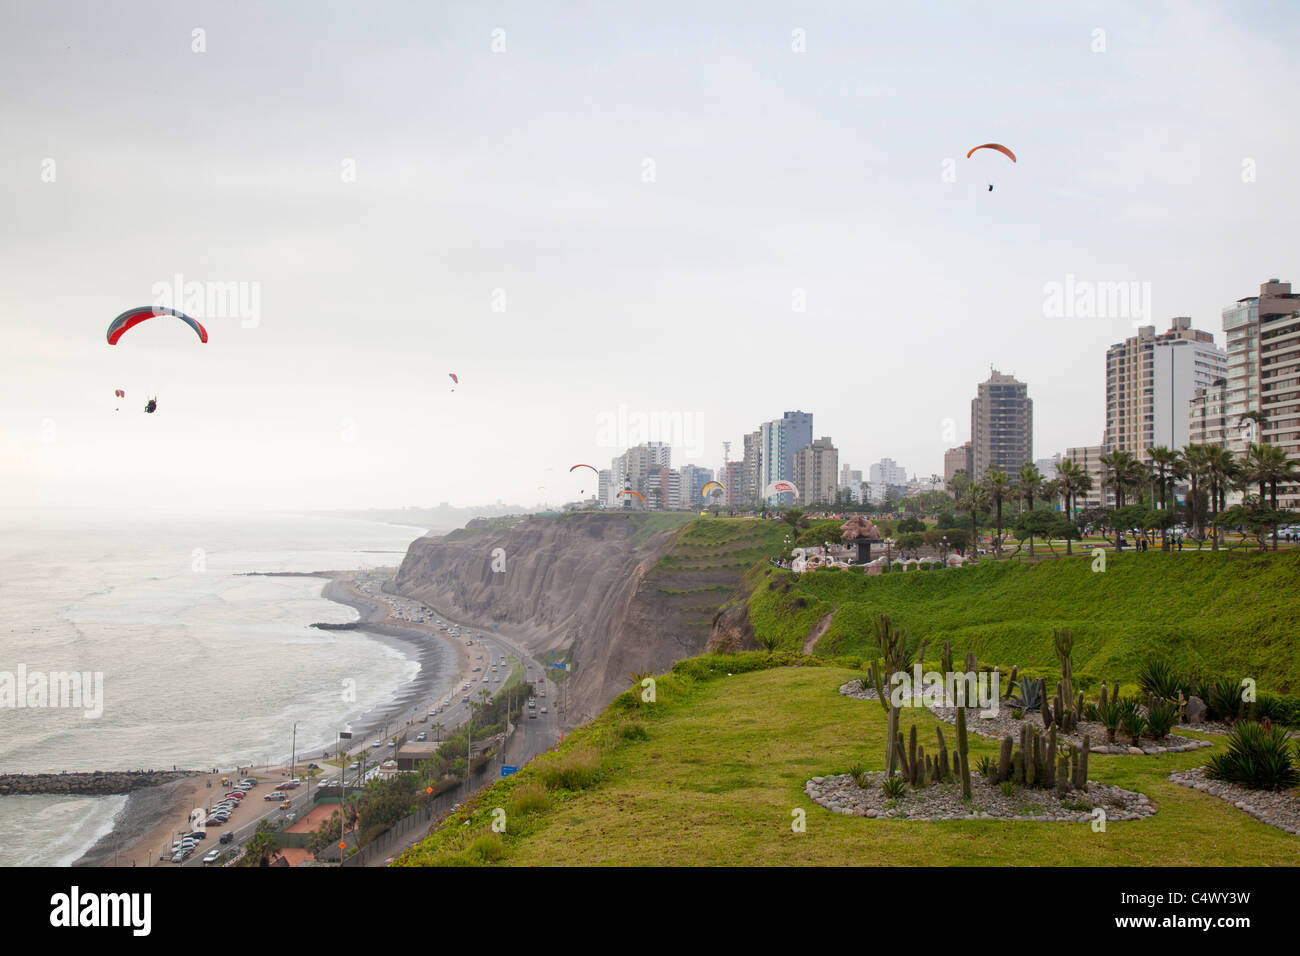 Paragliding over the coastline in Miraflores, Lima, Peru Stock Photo